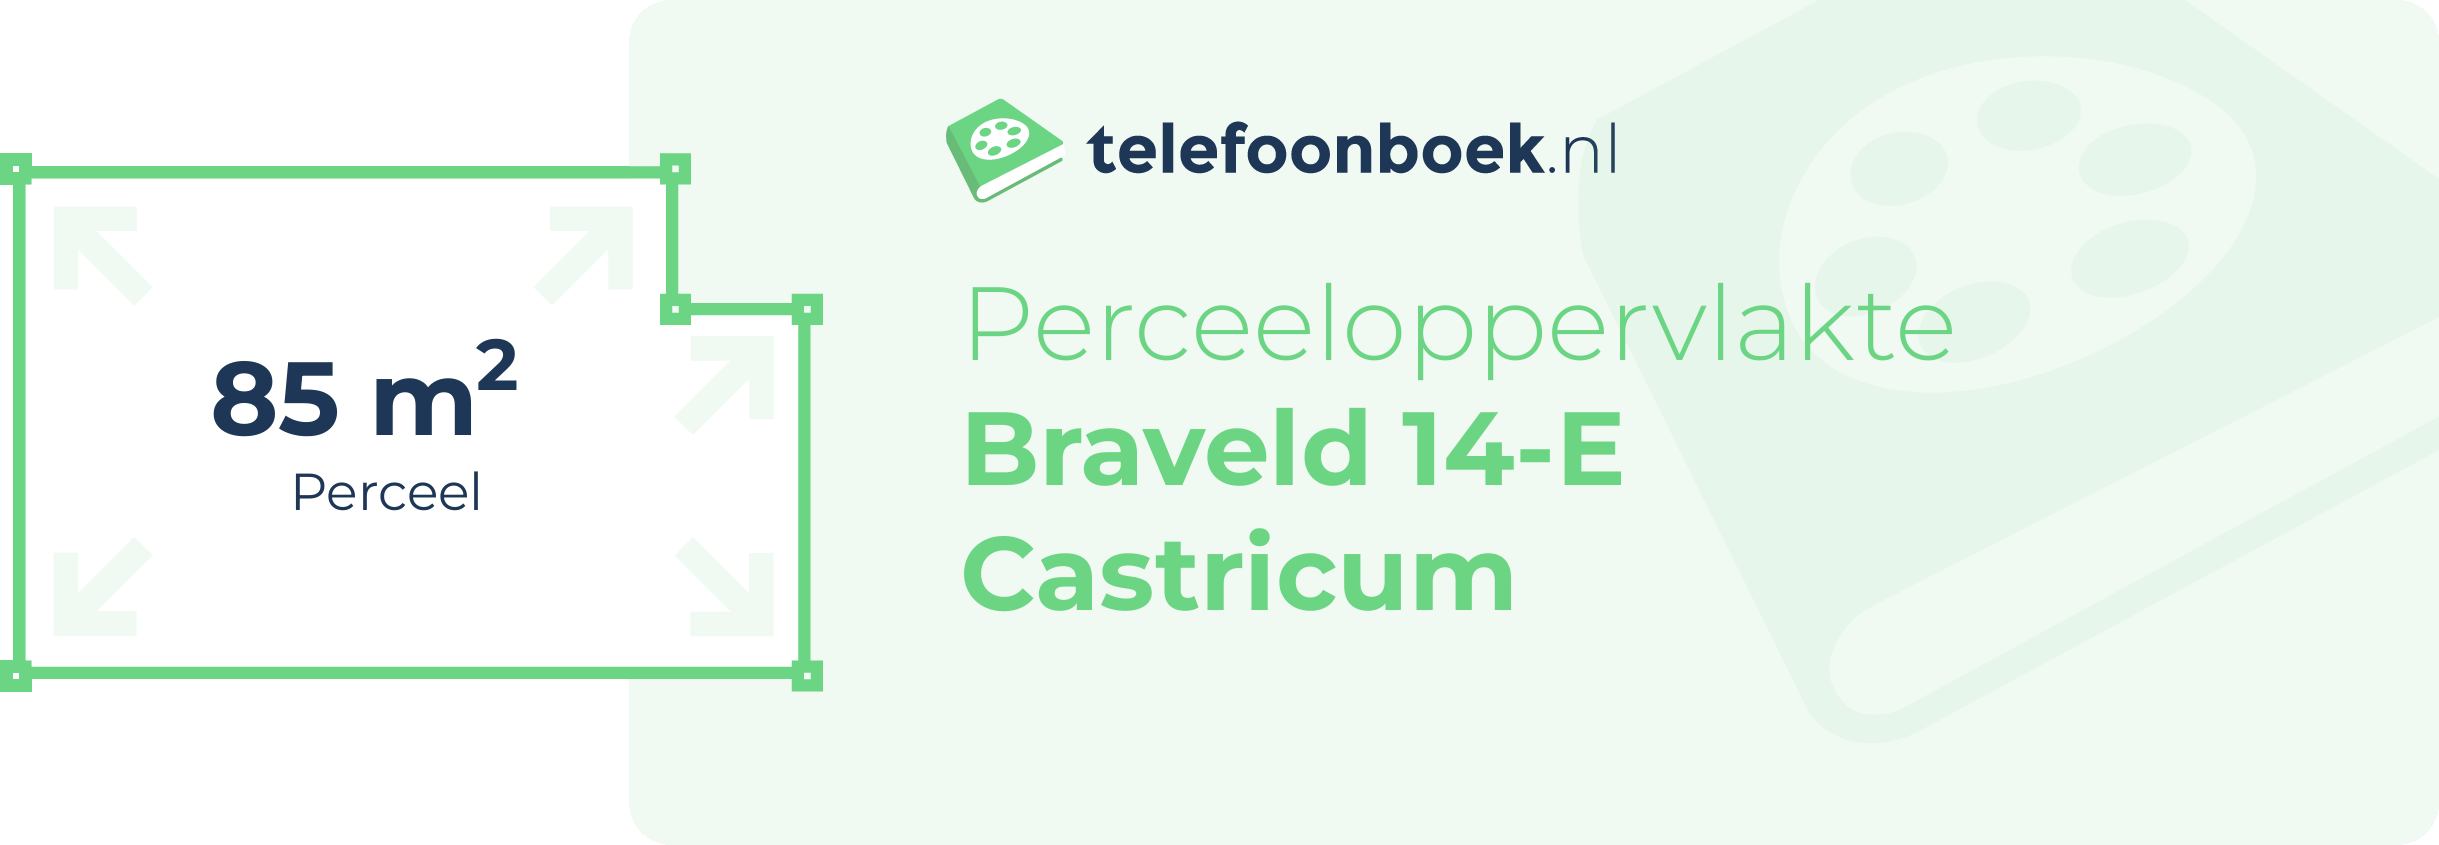 Perceeloppervlakte Braveld 14-E Castricum